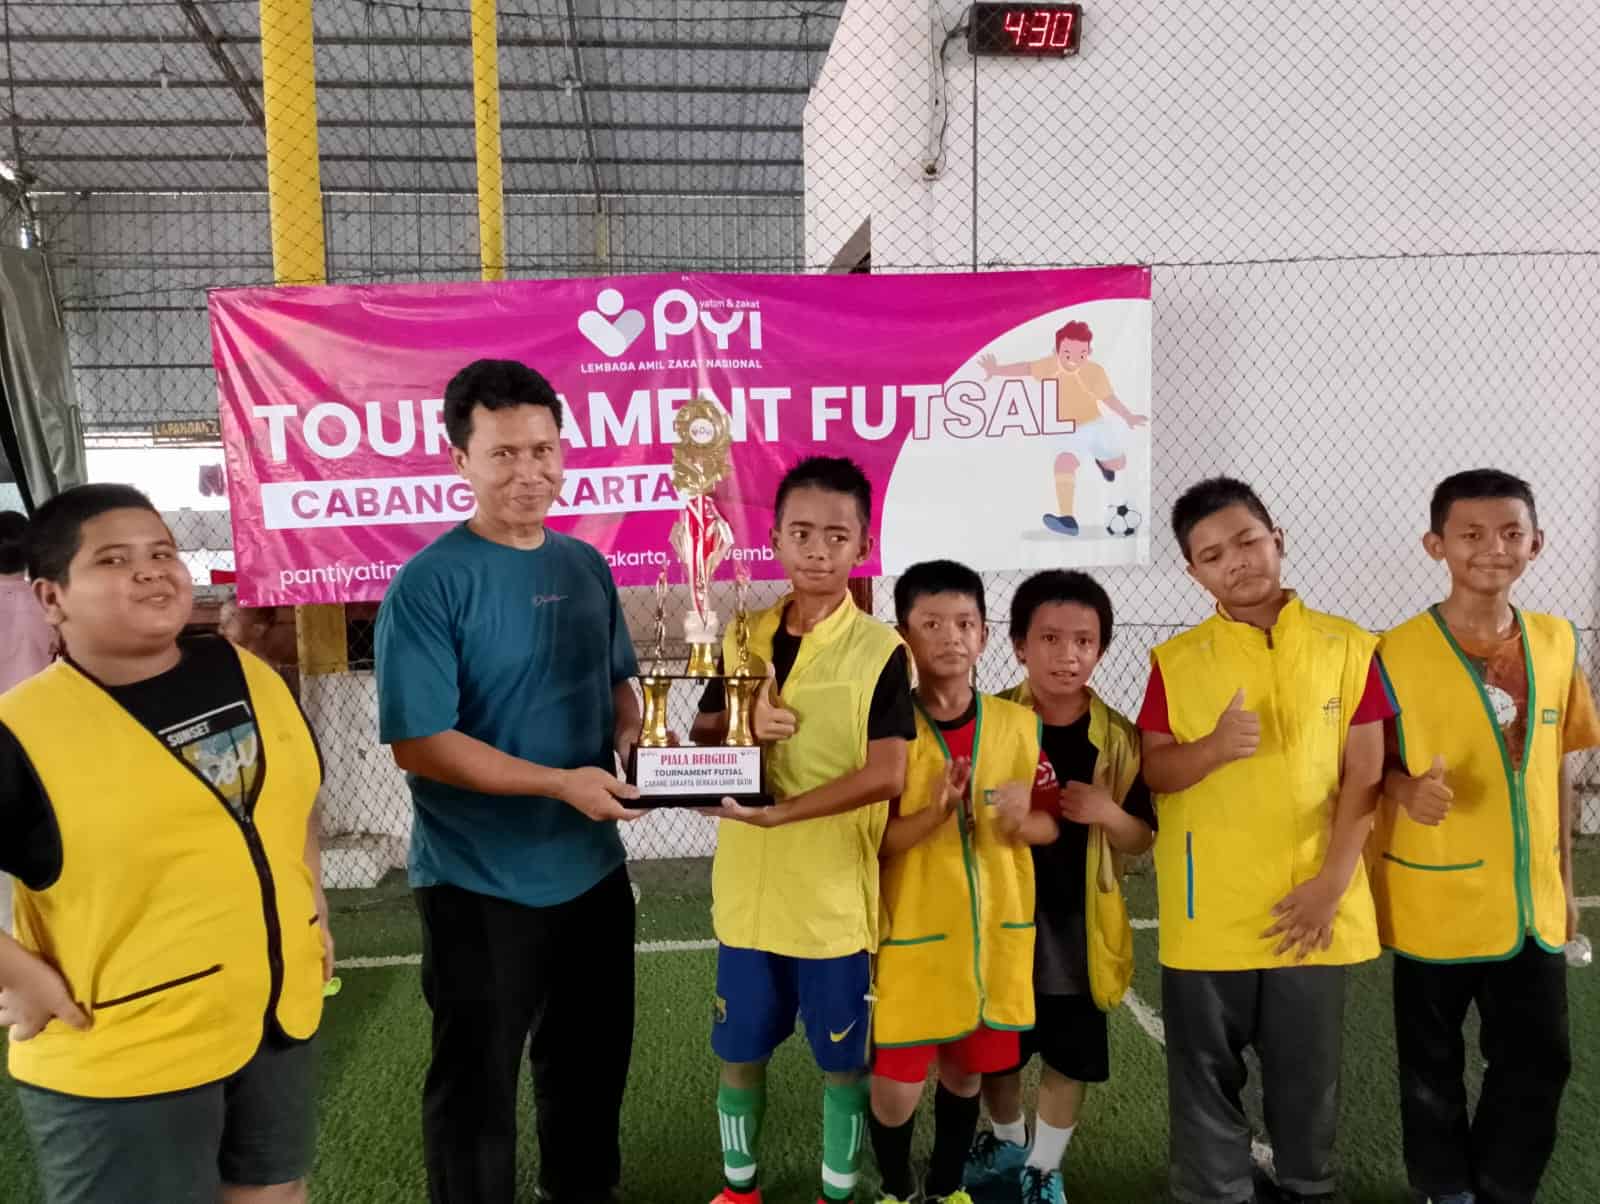 PYI Yatim dan Zakat Cabang Jakarta Selenggarakan Tournament Futsal Antar Asrama Yatim Cabang Jakarta